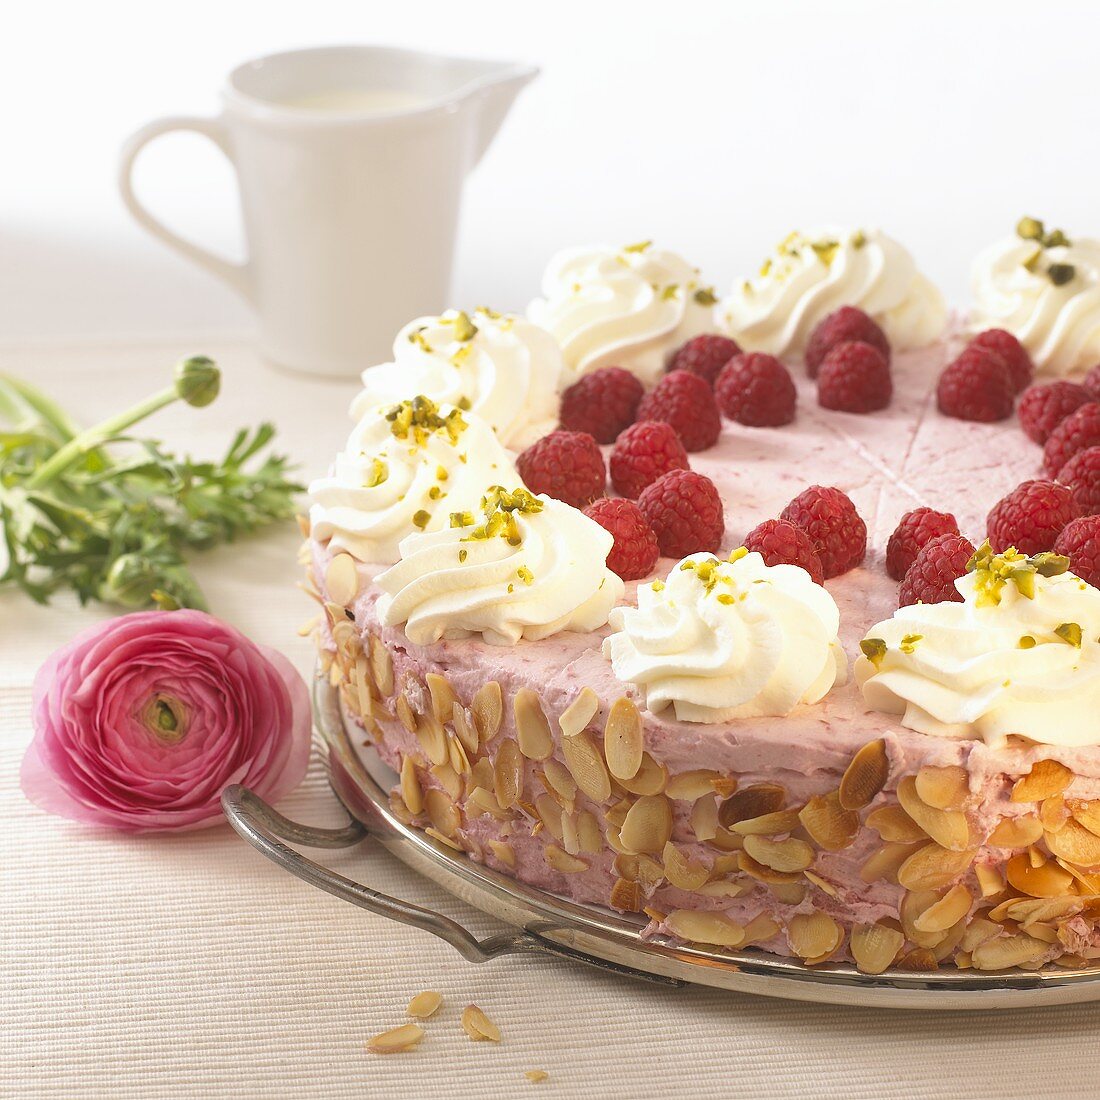 Himbeer-Sahne-Torte mit Mandelblättchen – Bilder kaufen – 267104 StockFood